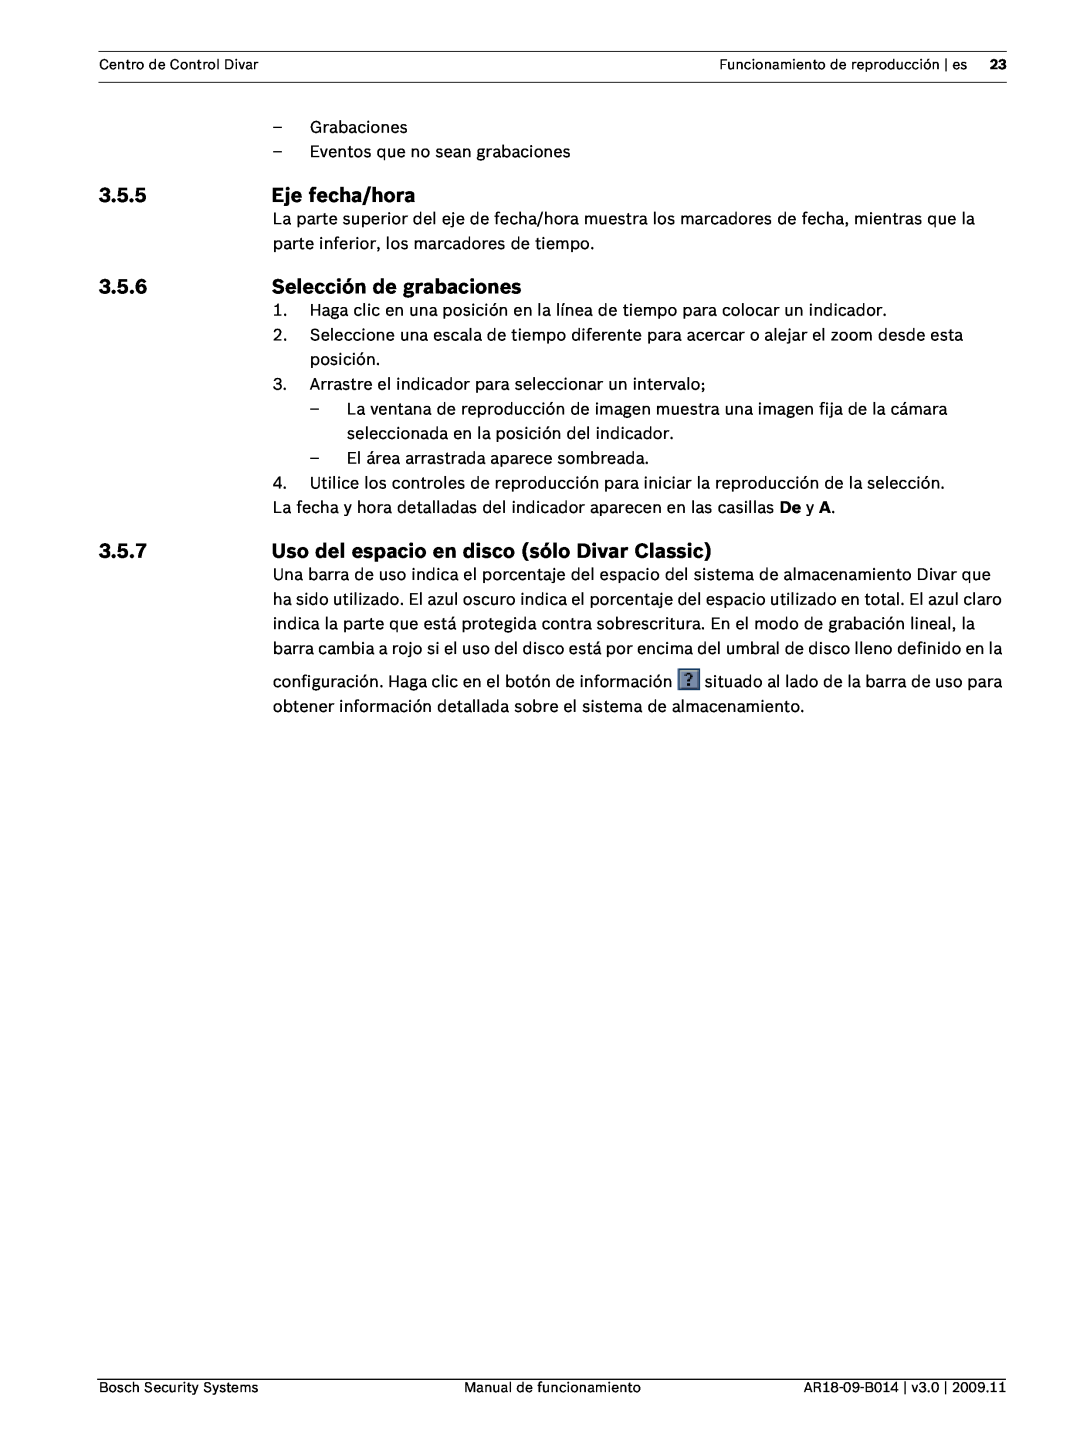 Bosch Appliances AR18-09-B014 manual 3.5.5, Eje fecha/hora, 3.5.6, Selección de grabaciones, 3.5.7 